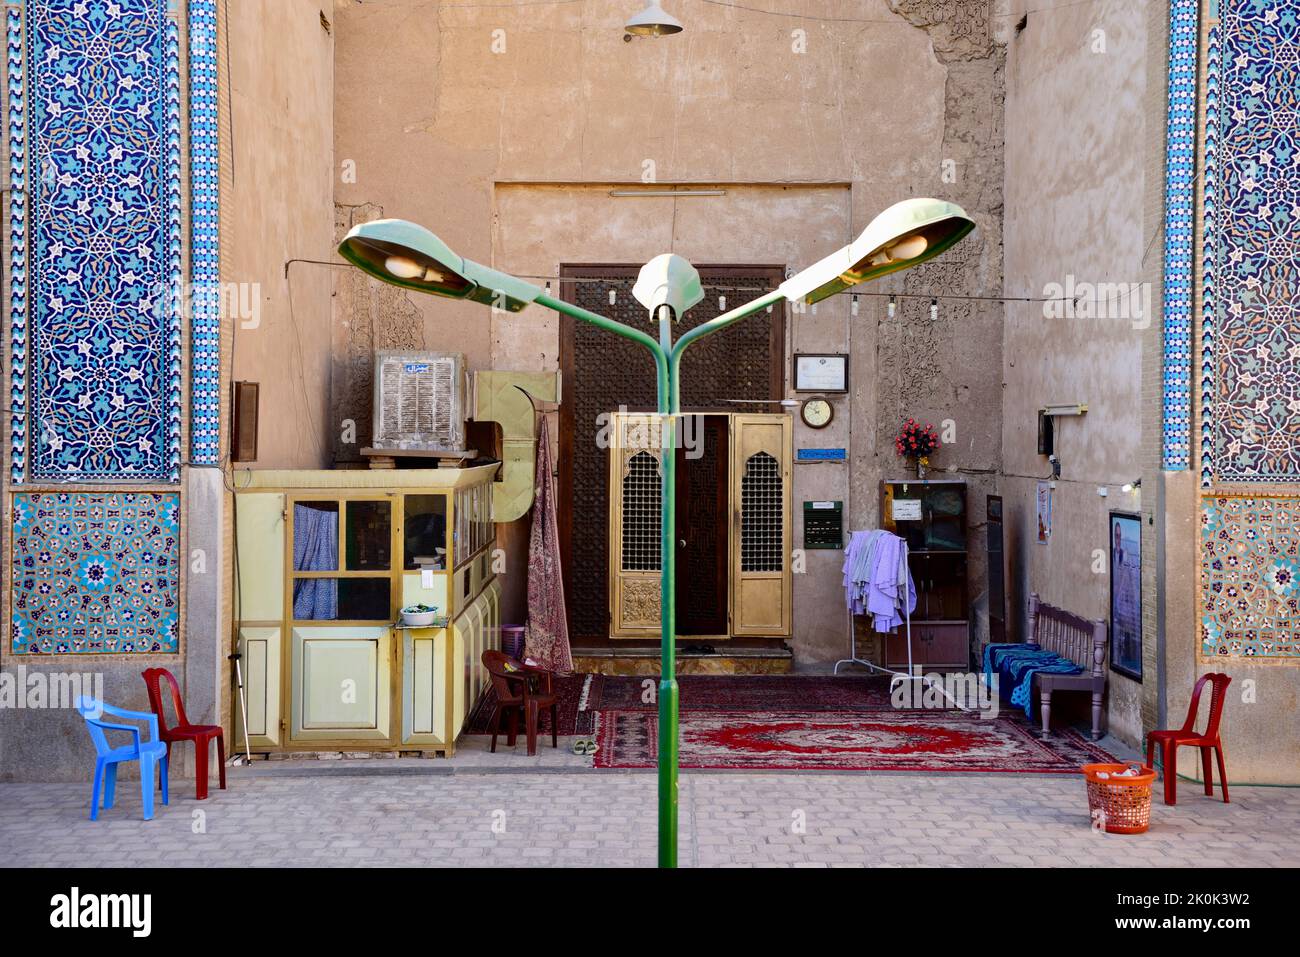 Ingresso alla moschea per la preghiera, Iran. Foto Stock